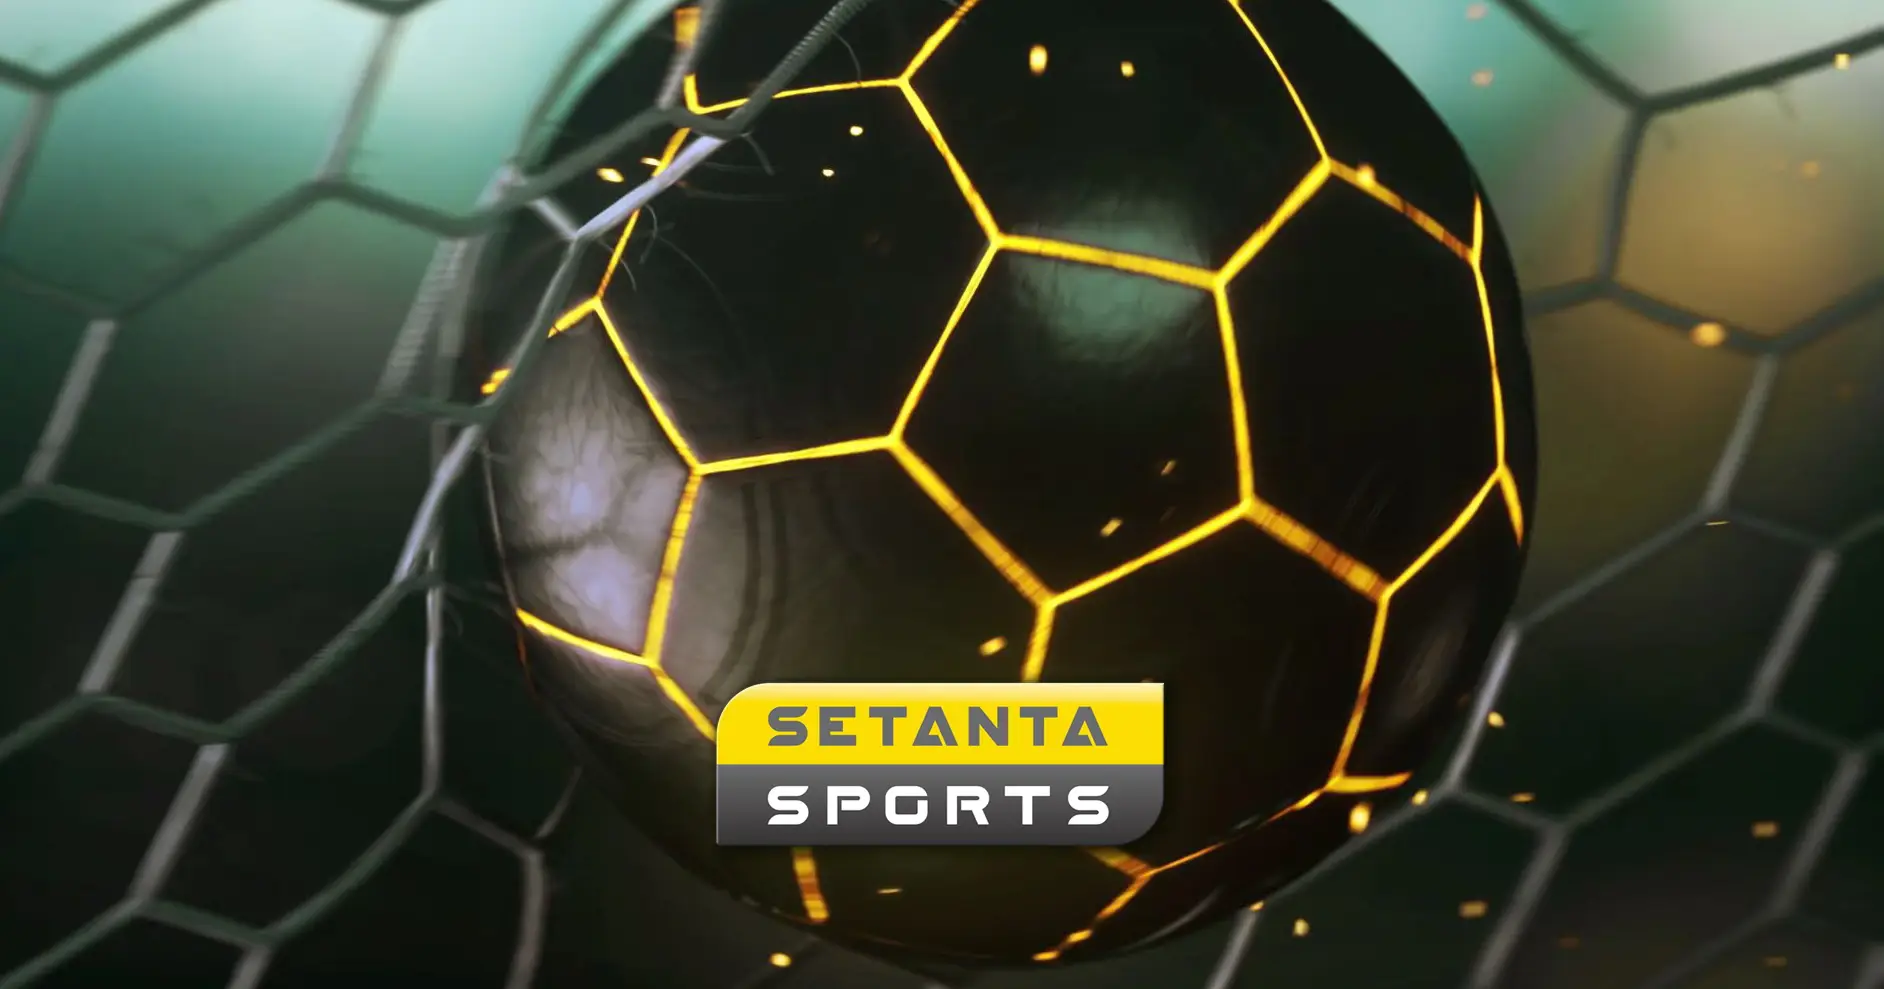 Що таке Setanta: мовить у 14 країнах (і в Білорусі), власники з Грузії, показує топовий спорт